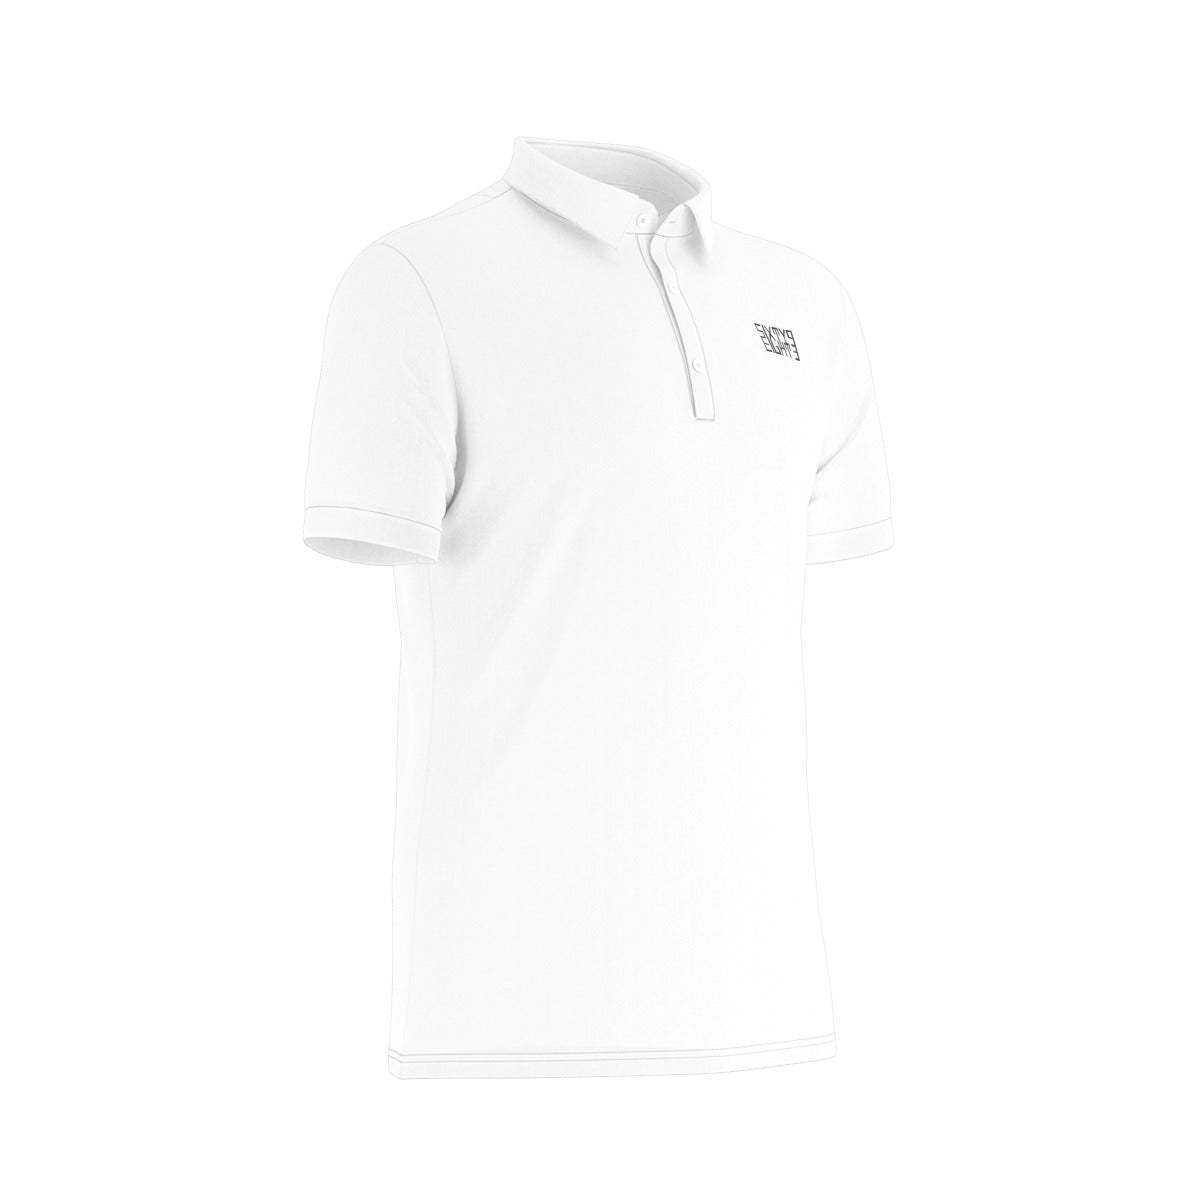 Sixty Eight 93 Logo Black White Men's Stretch Polo Shirt